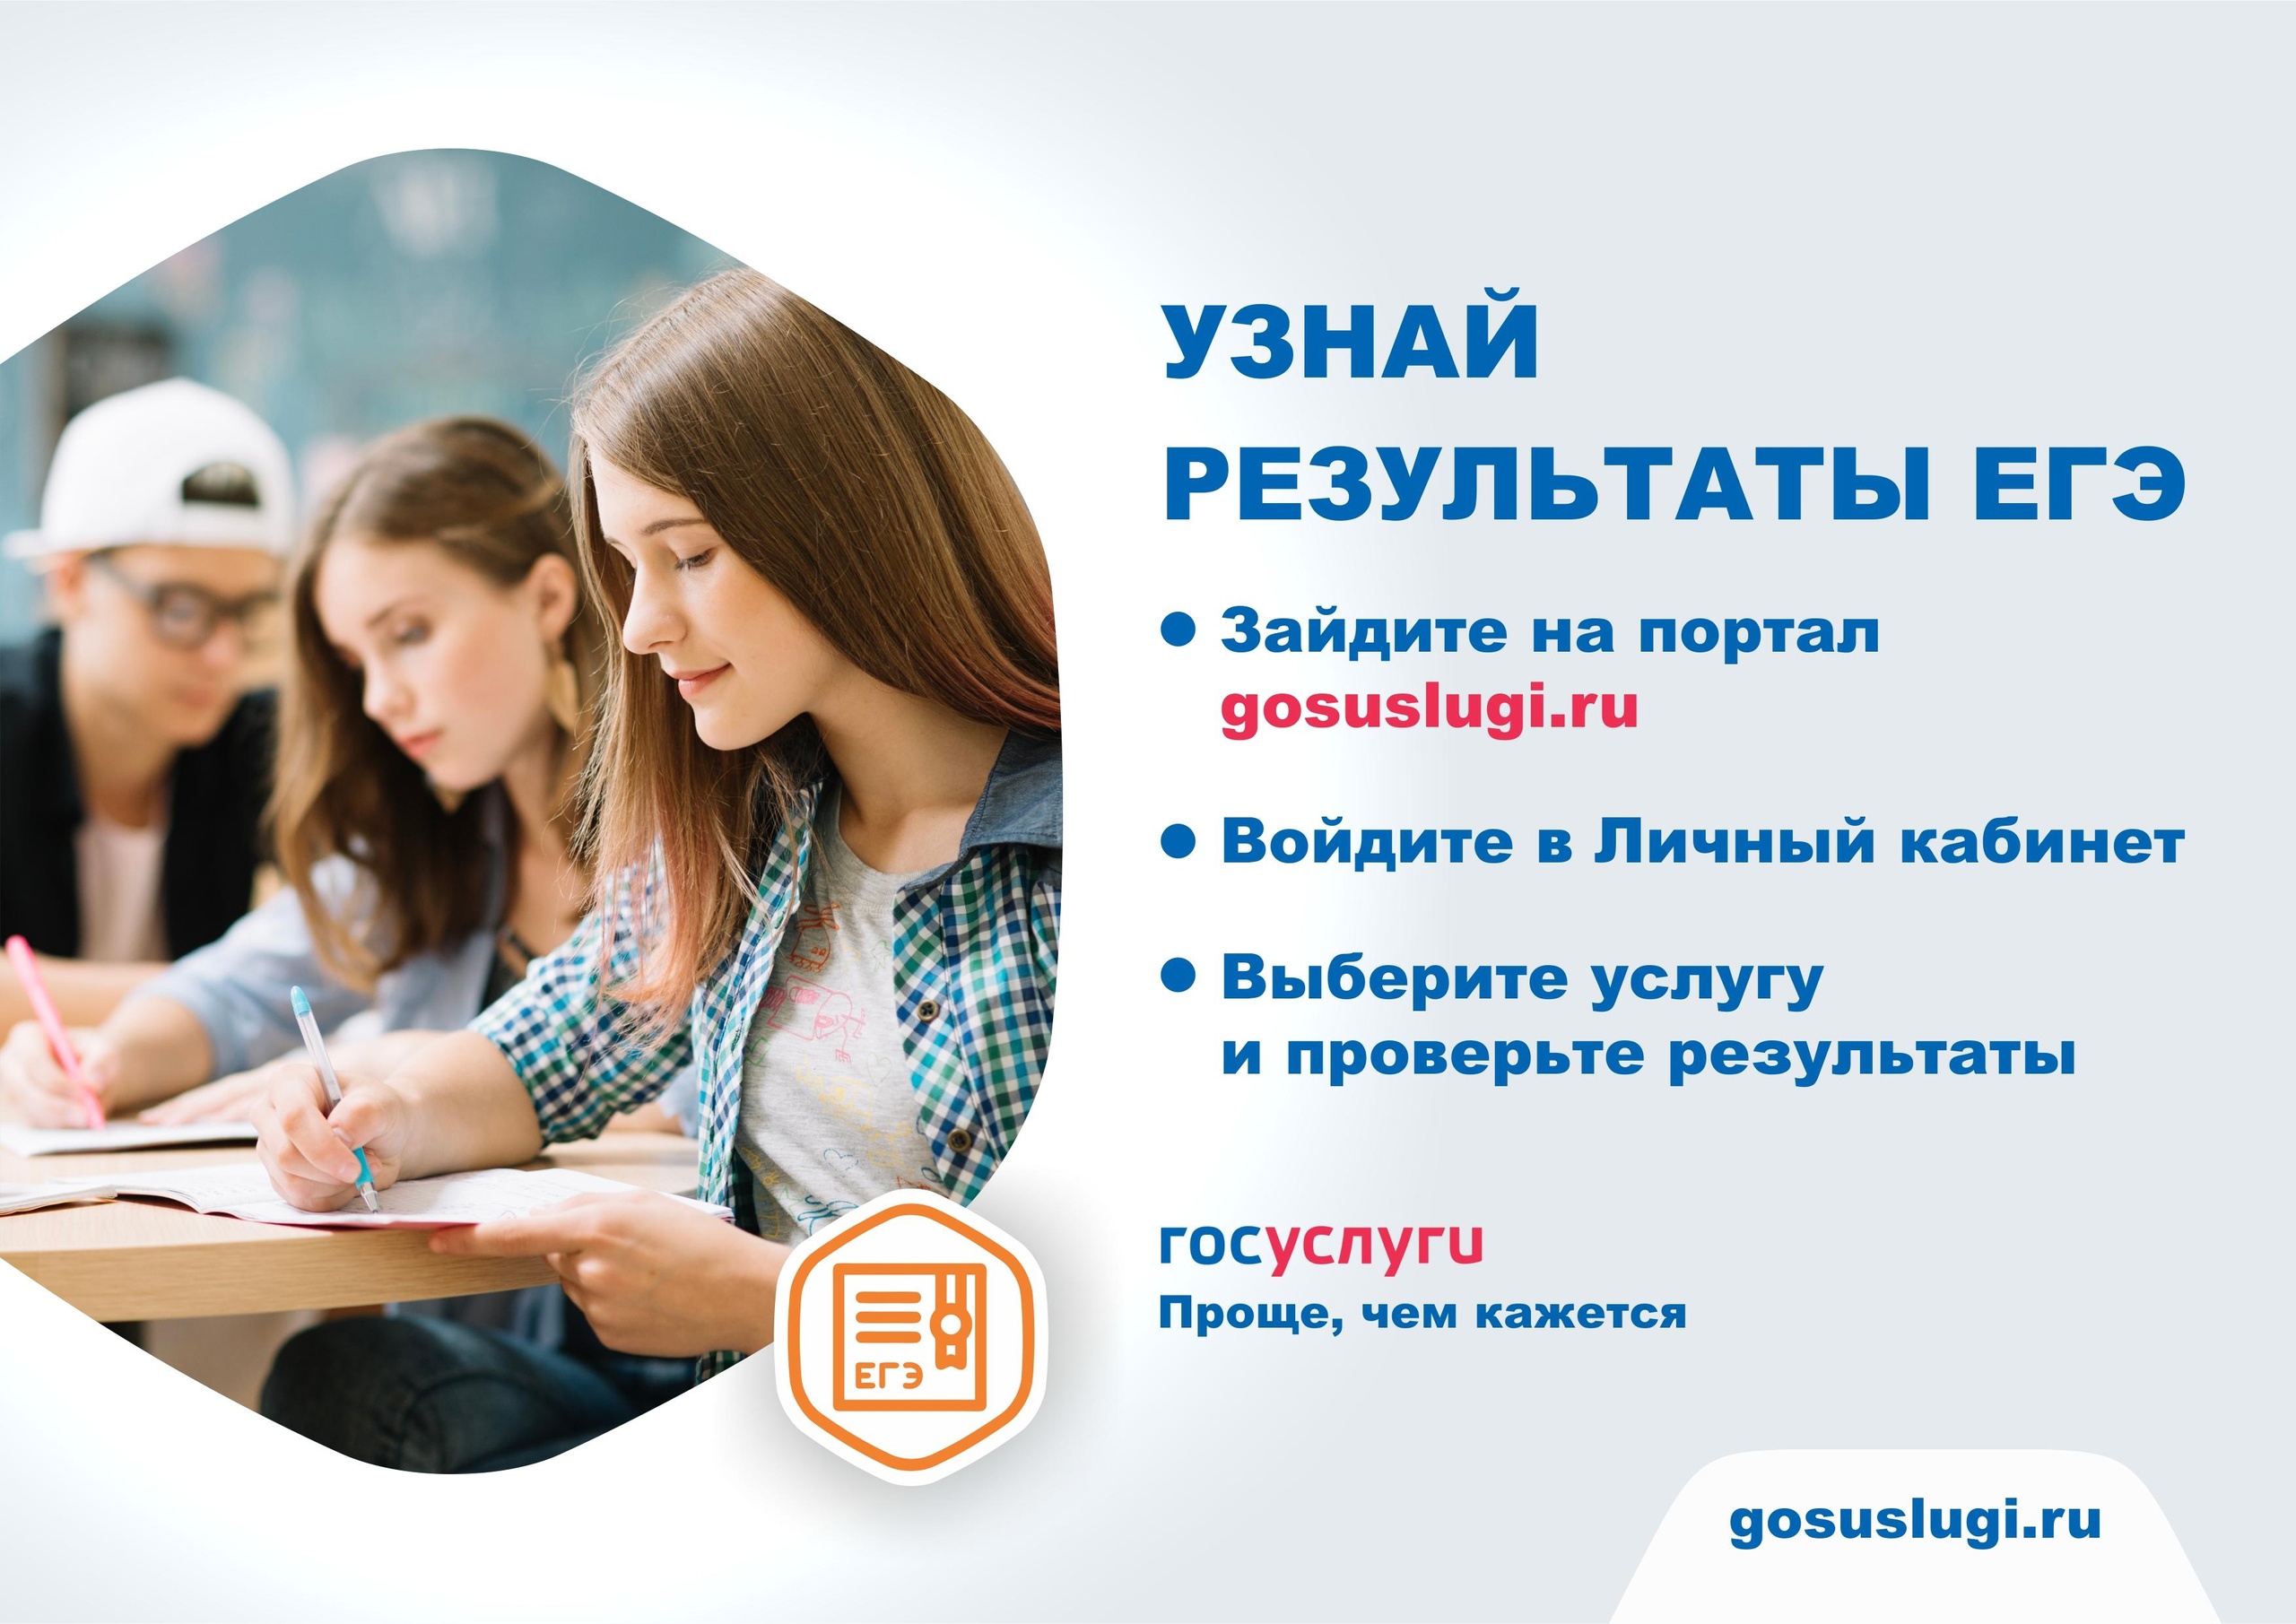 Ульяновские школьники могут узнать результаты ЕГЭ на Госуслугах.